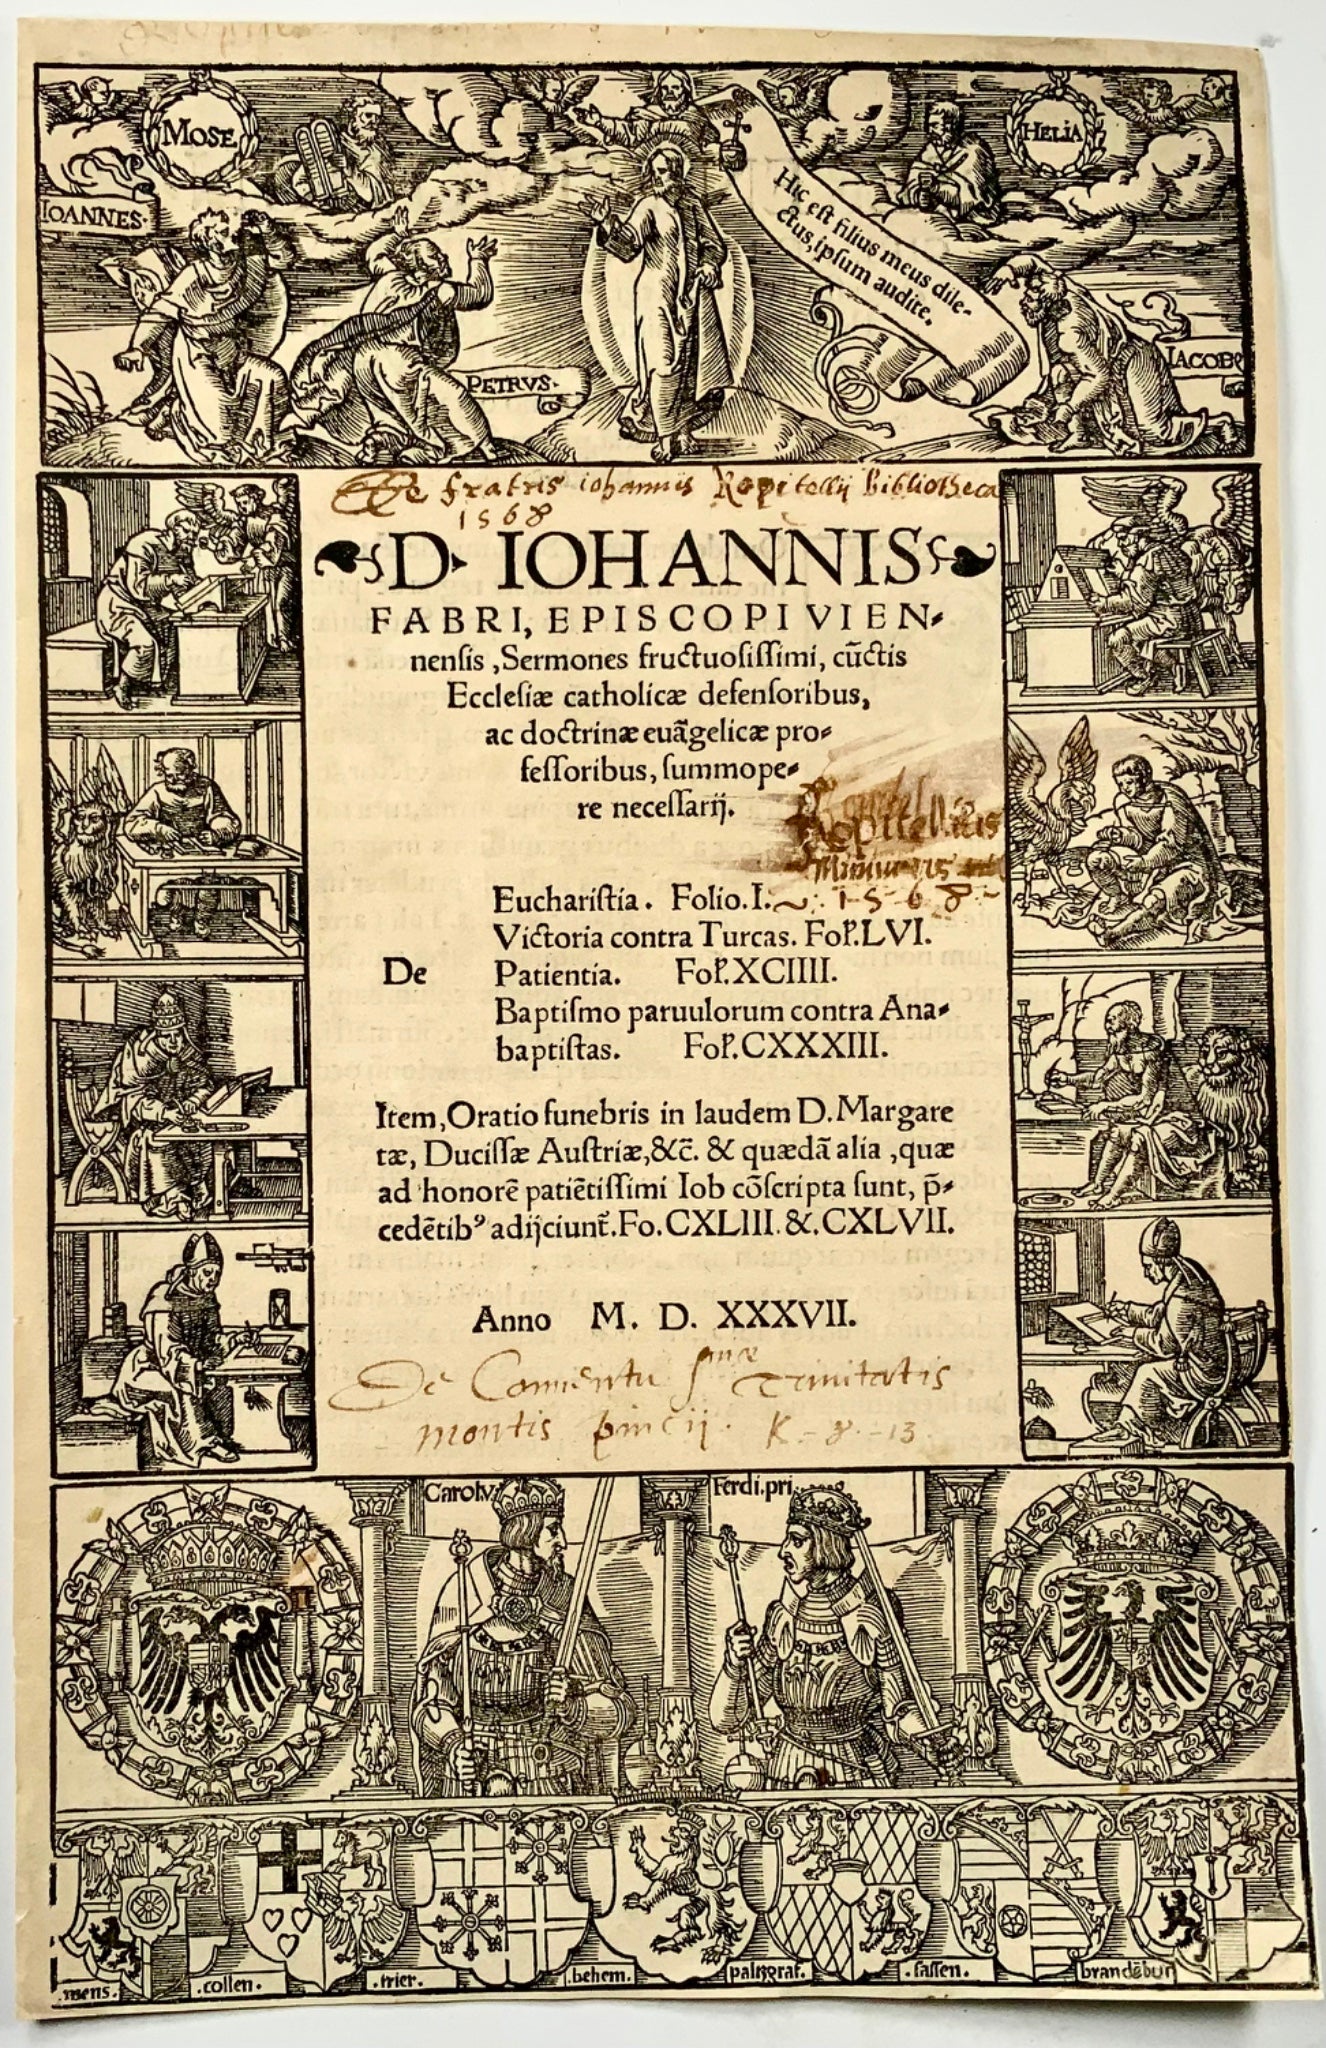 1537 Titolo xilografico, Anton Woensam, bordo xilografico illustrato, Faber, religione